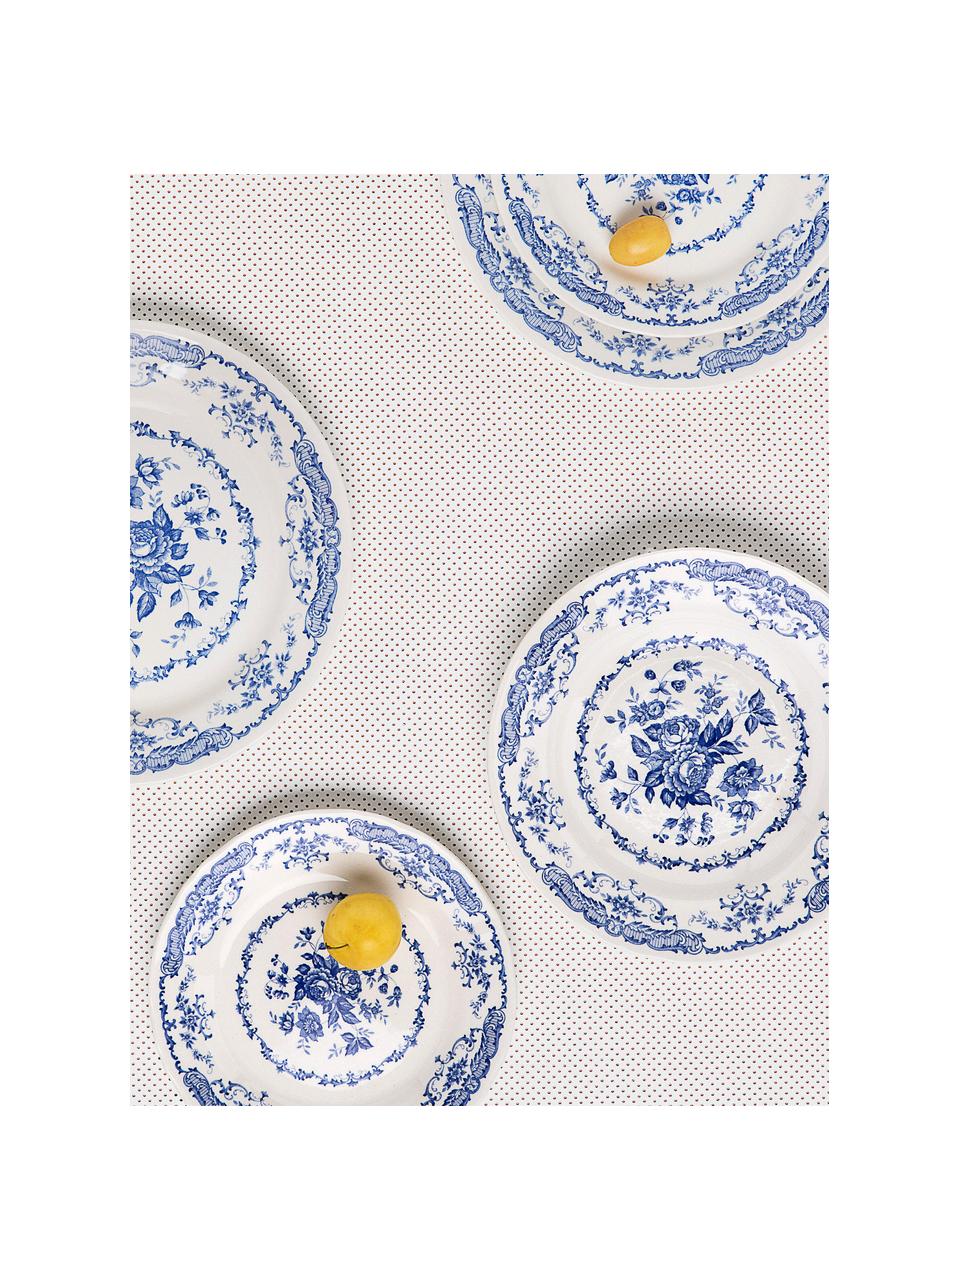 Suppenteller Rose mit Blumenmuster in Weiß/Blau, 2 Stück , Keramik, Weiß, Blau, Ø 23 x H 4 cm